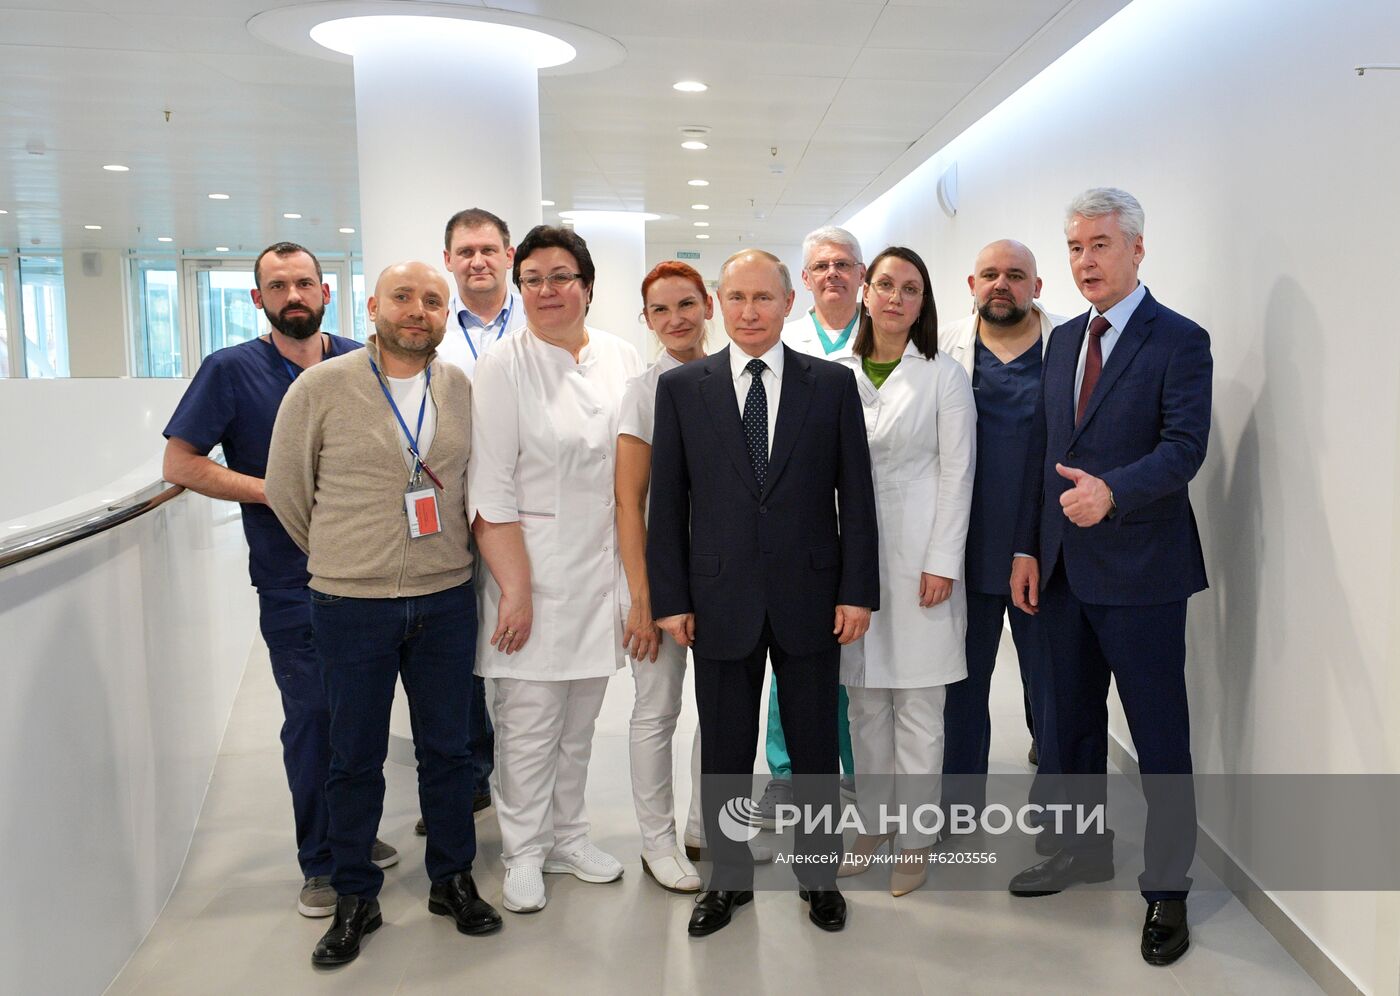 Президент РФ В. Путин посетил больницу в Коммунарке